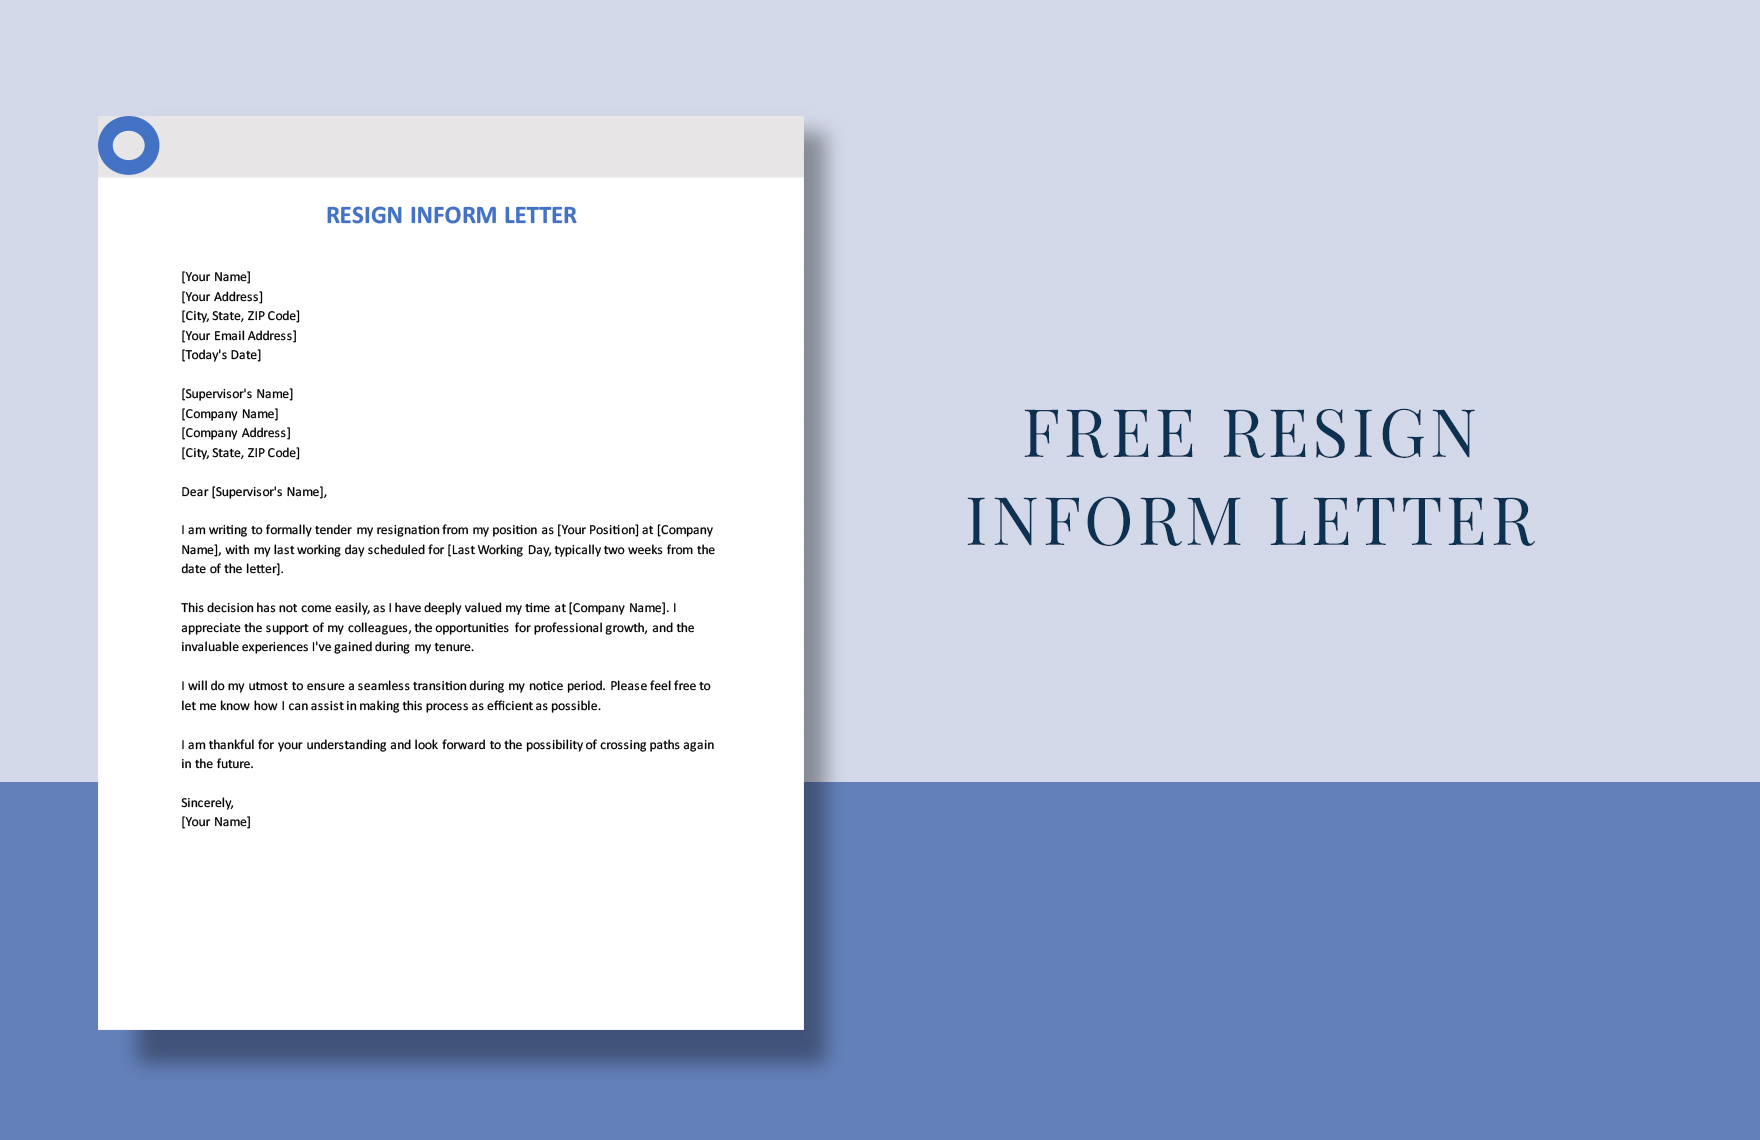 Resign Inform Letter